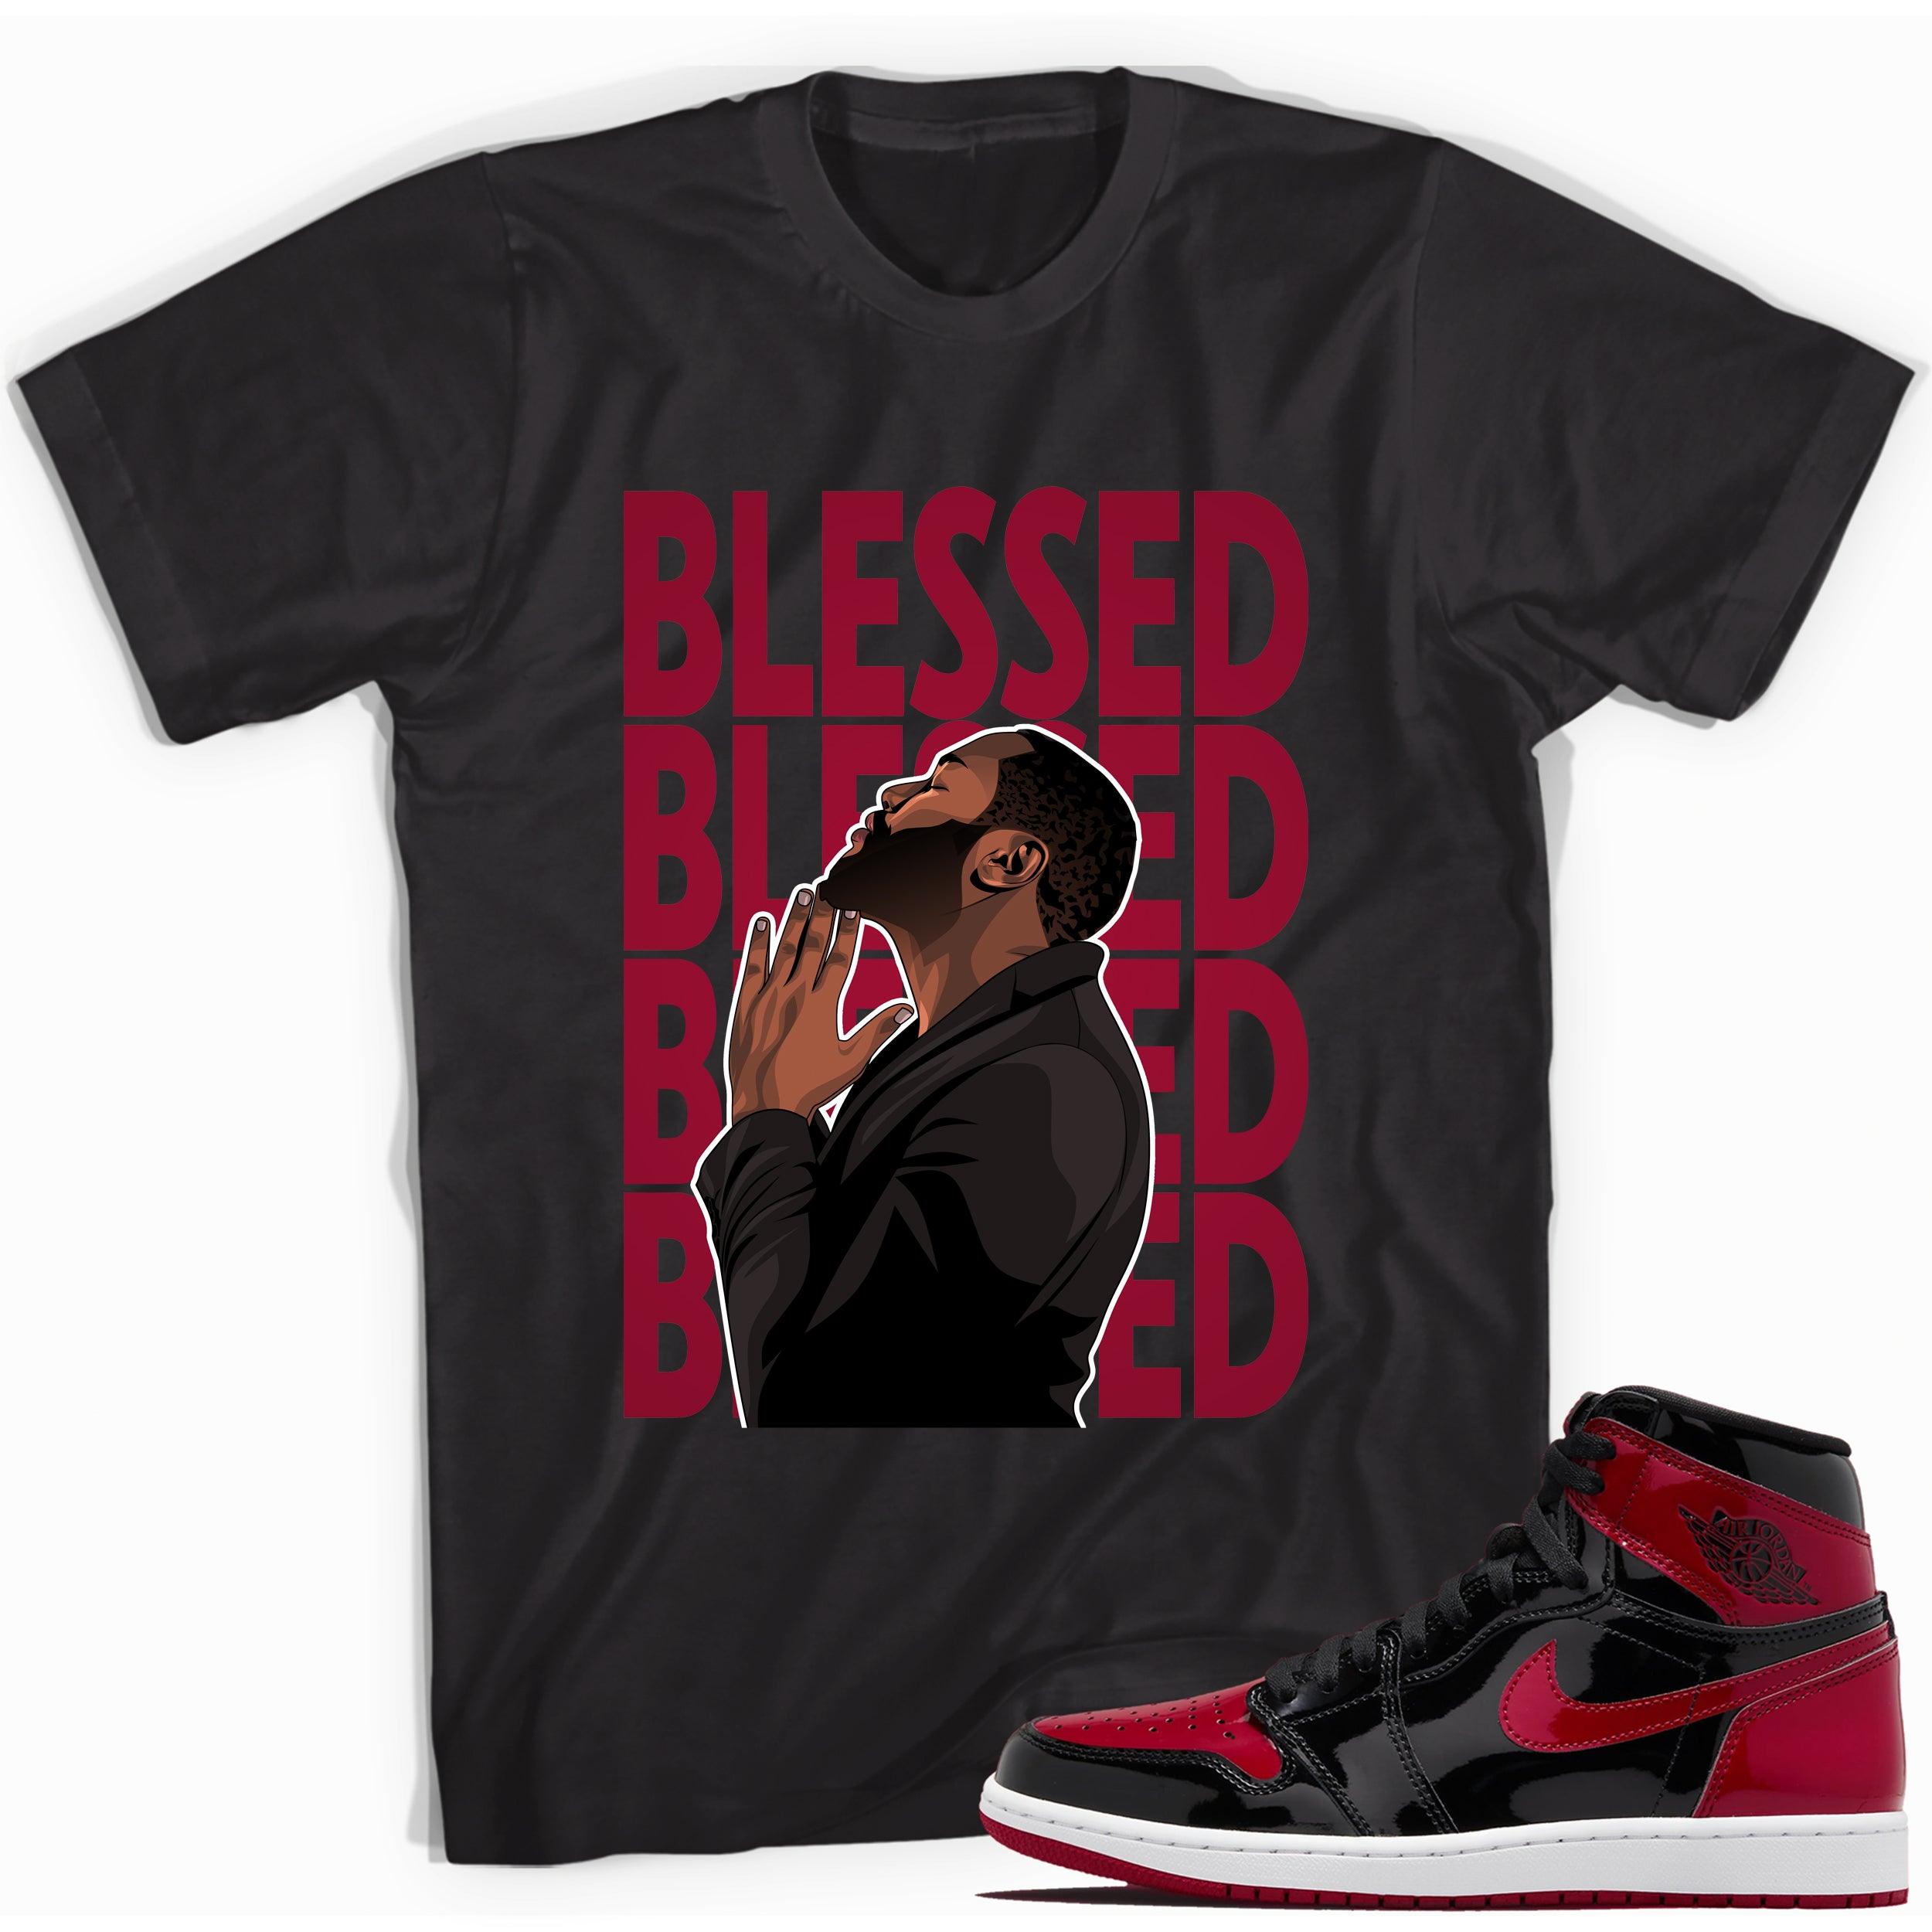 God Blessed Sneaker Shirt for Jordan 1s Retro Bred Patent photo